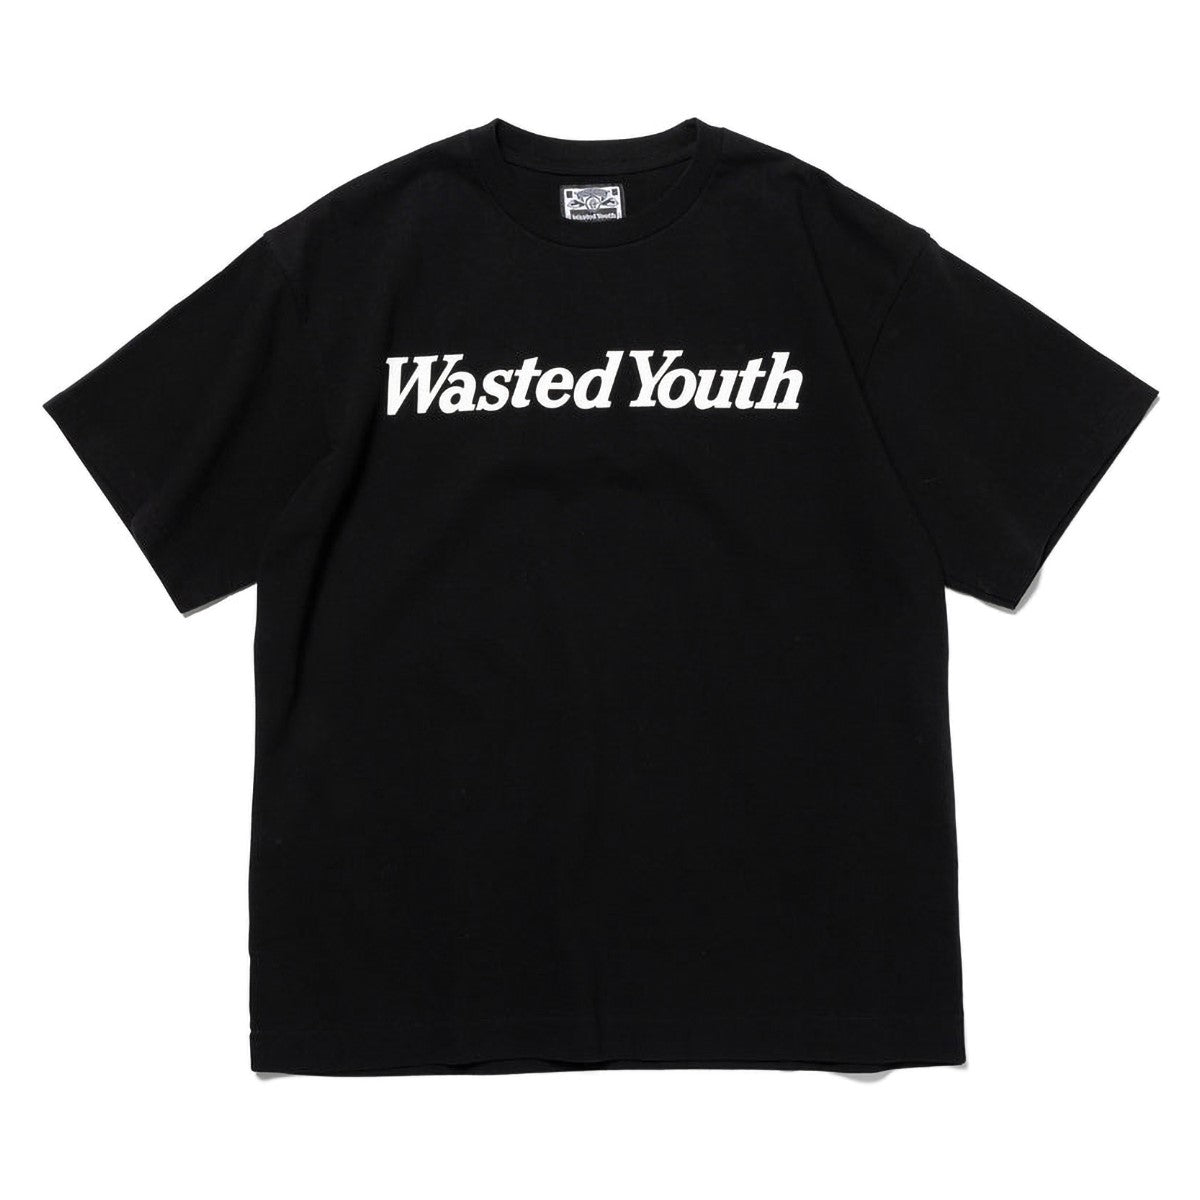 wasted youth T-SHIRT ♯4 L verdy - rentrastockholm.se